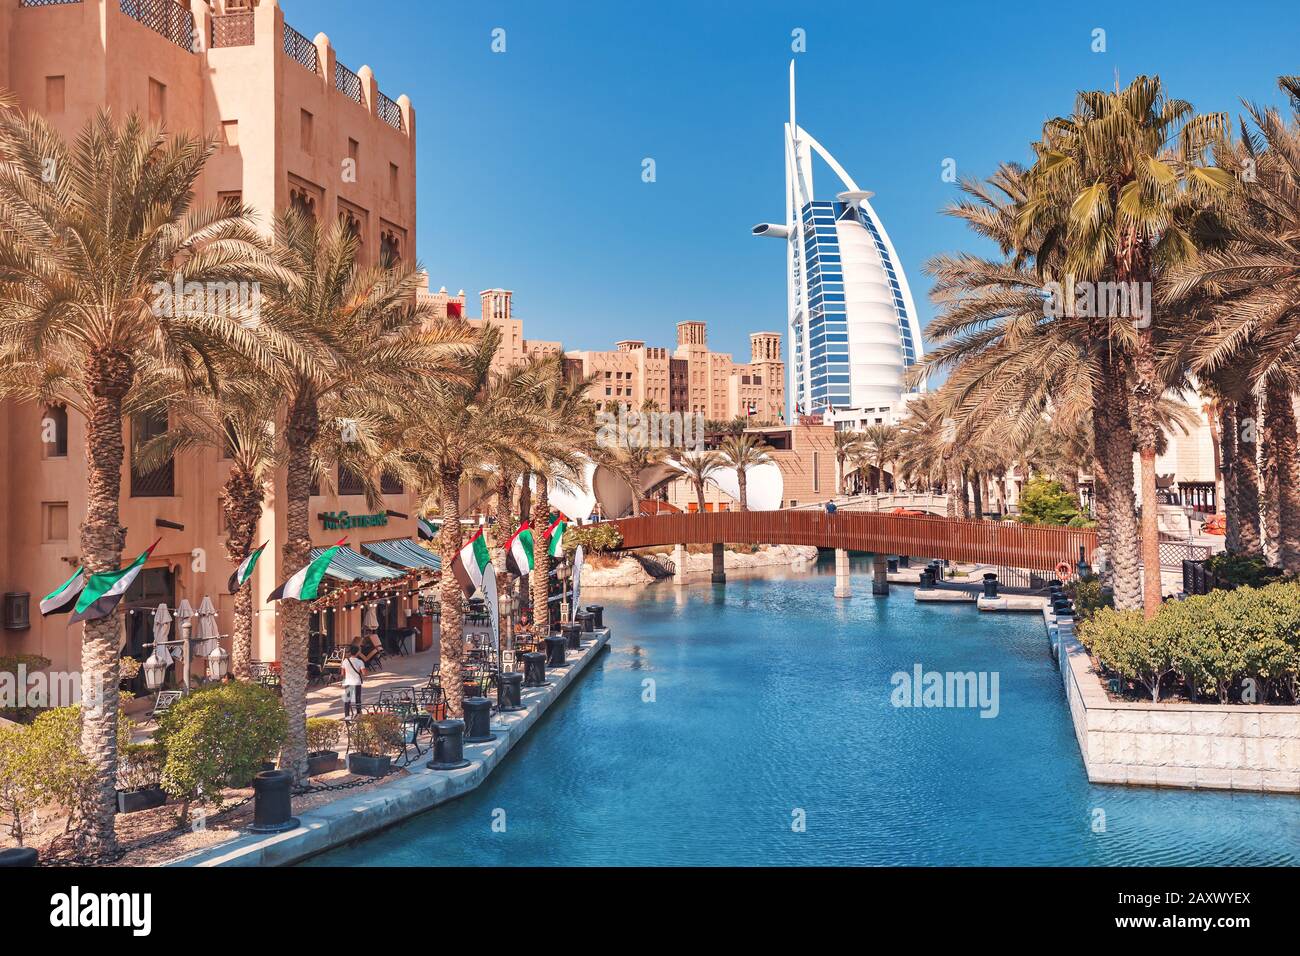 27 novembre 2019, Emirati Arabi Uniti, Dubai: Vista della città da Madinat sul famoso Seven Star Hotel Burj al Arab Foto Stock